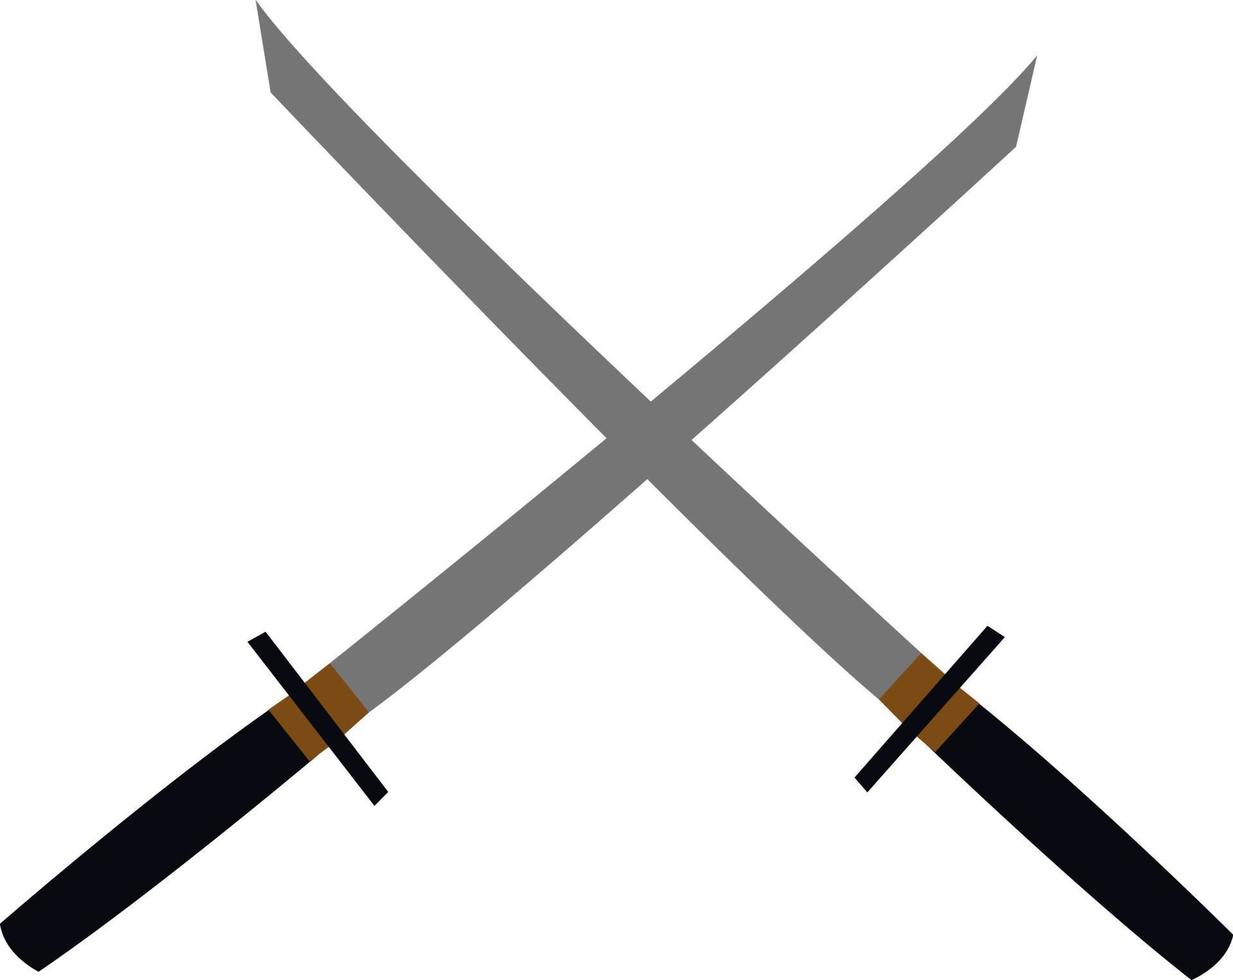 Katana sword, illustration, vector on white background.